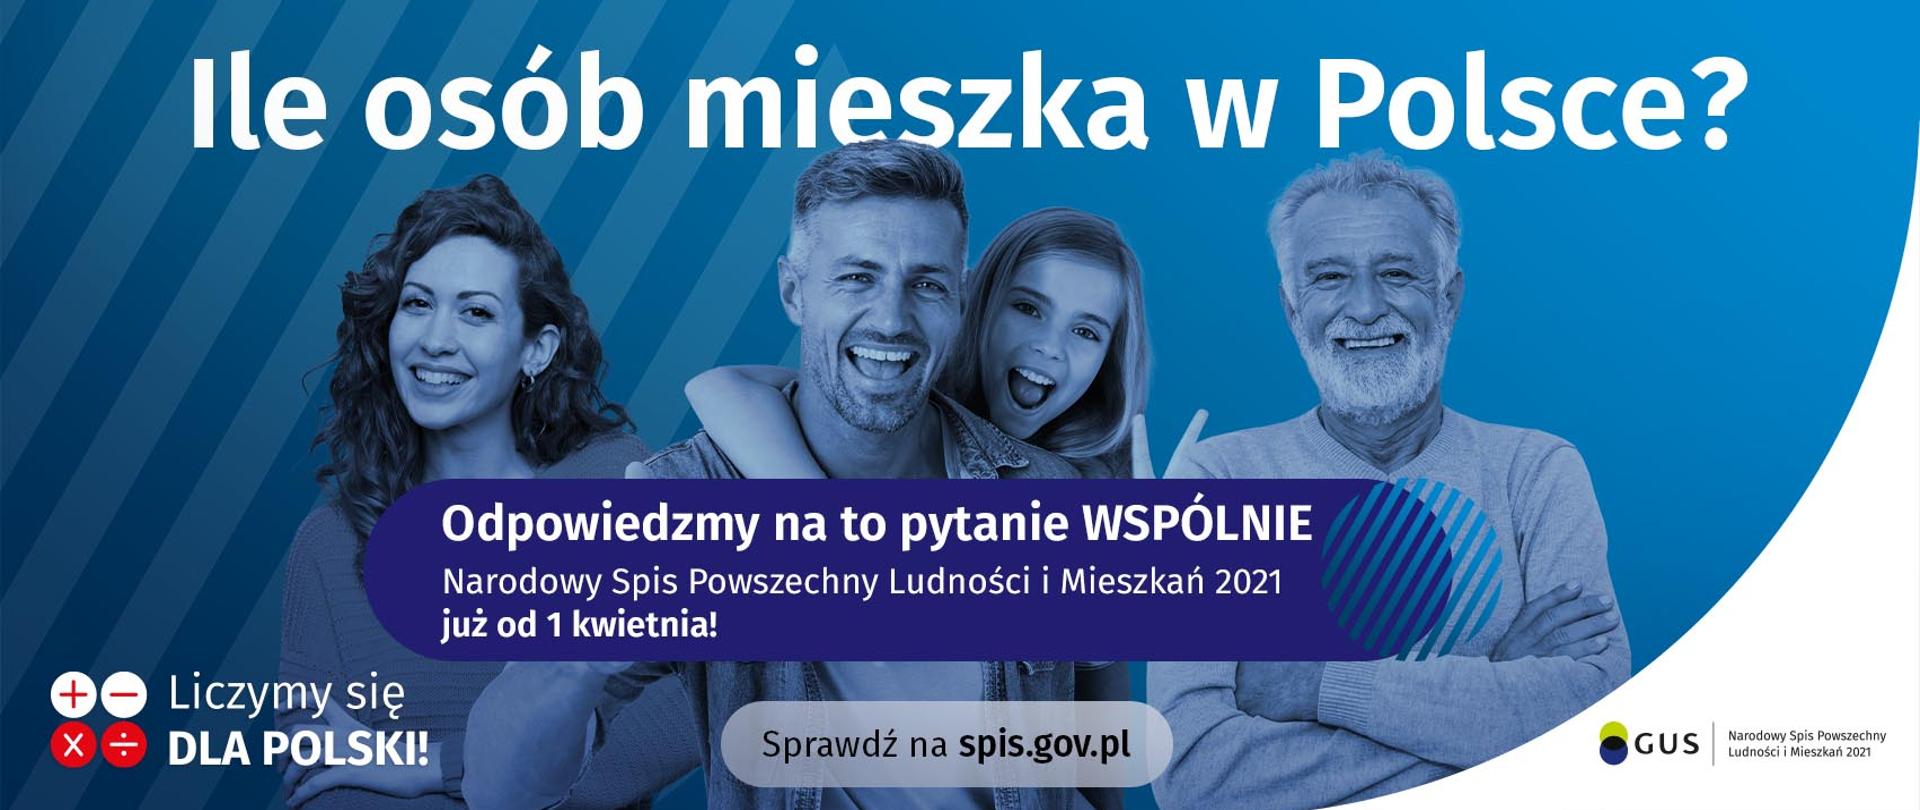 Banner informacyjny o Narodowym Spisie Powszechnym, osoby na niebieskim tle, napis "wejdź na spis.gov.pl i spisz się! Spis trwa od 1 kwietnia"